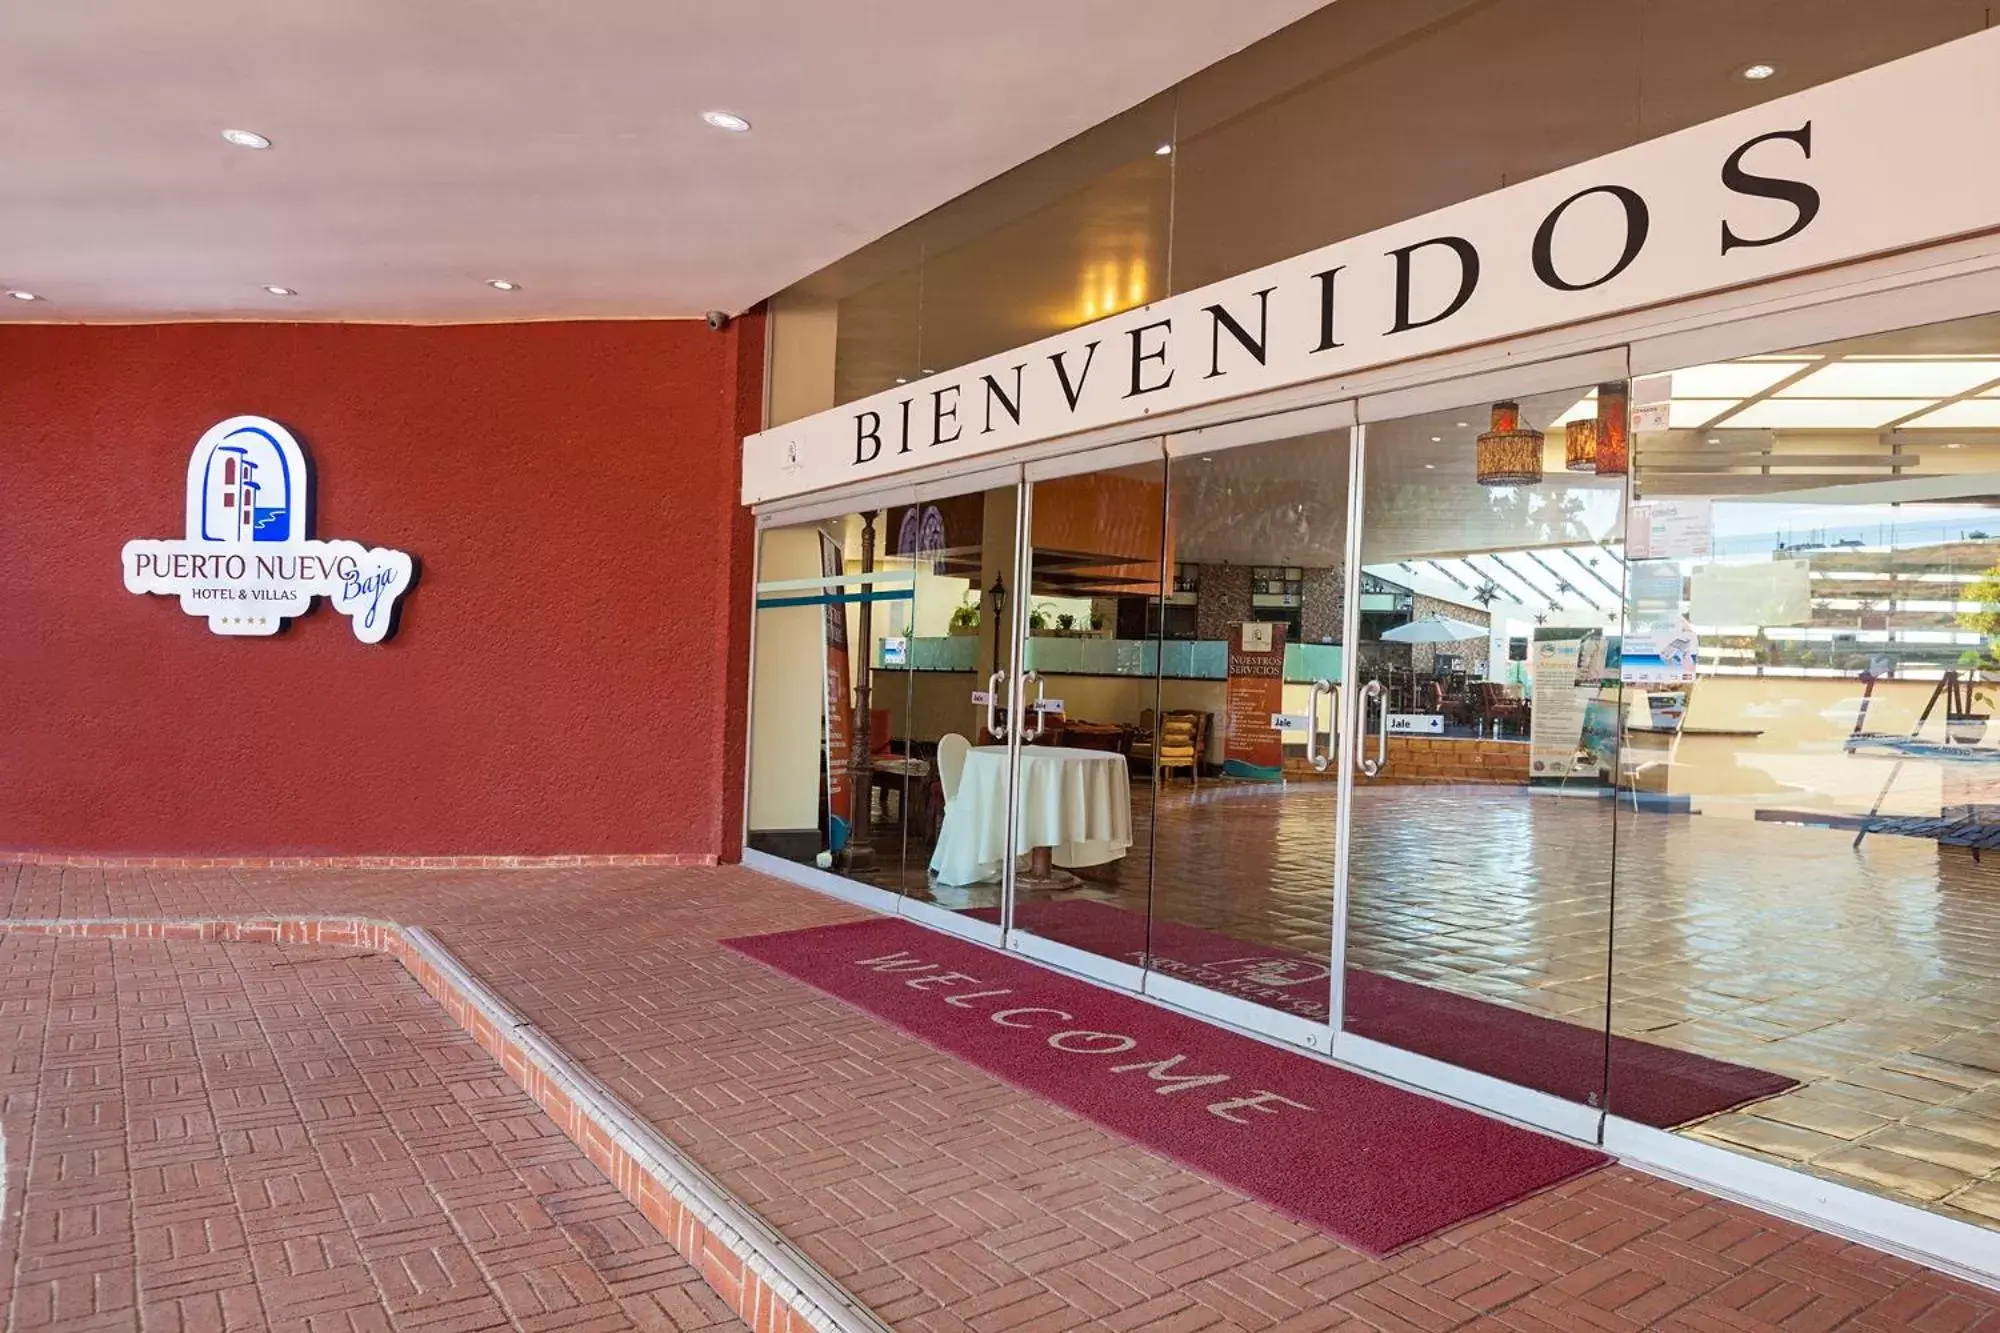 Lobby or reception, Facade/Entrance in Puerto Nuevo Baja Hotel & Villas